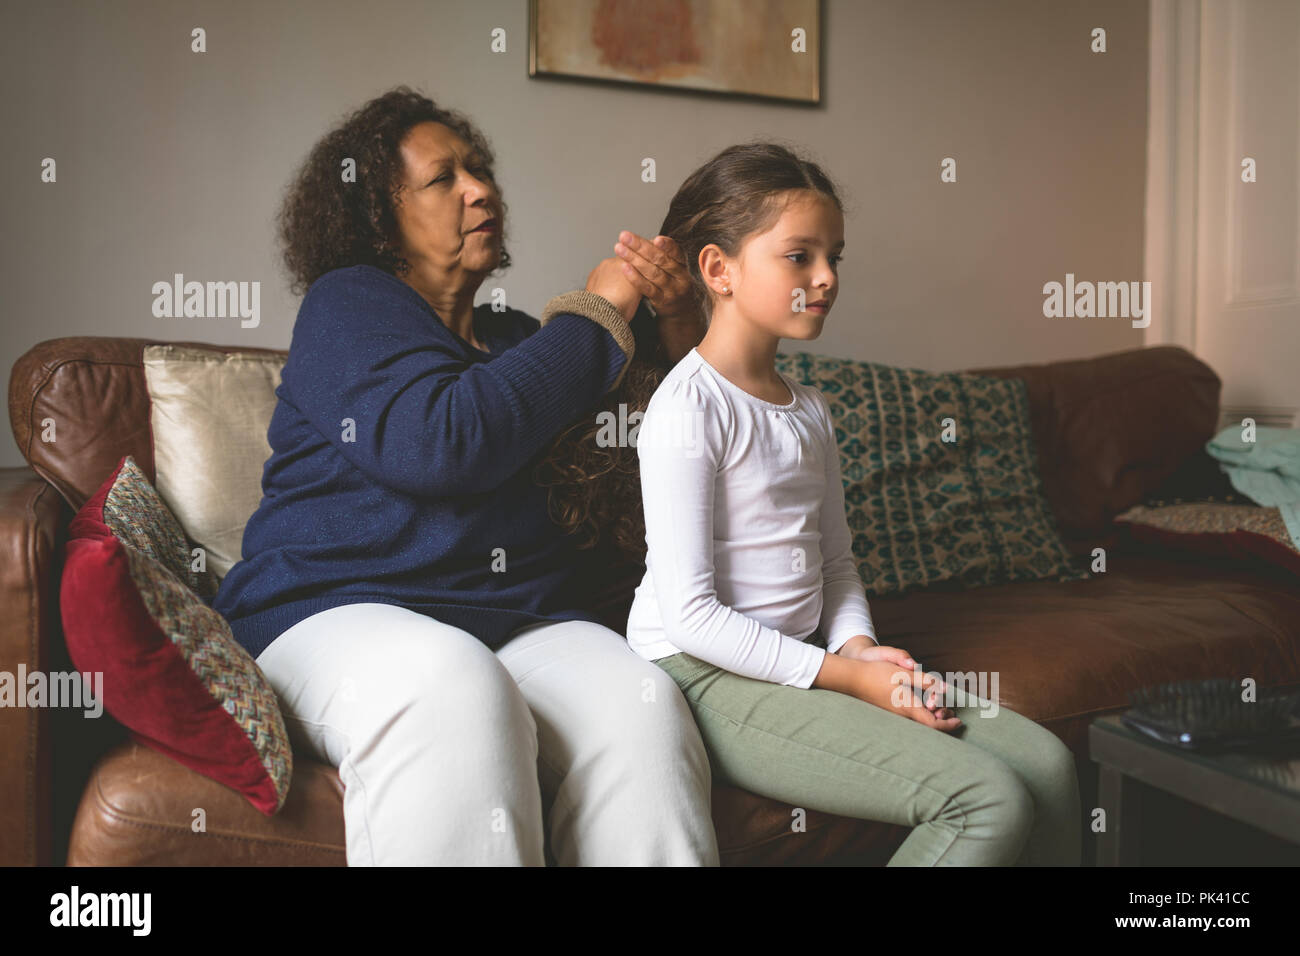 Grand-mère fait coiffure de petite-fille Banque D'Images